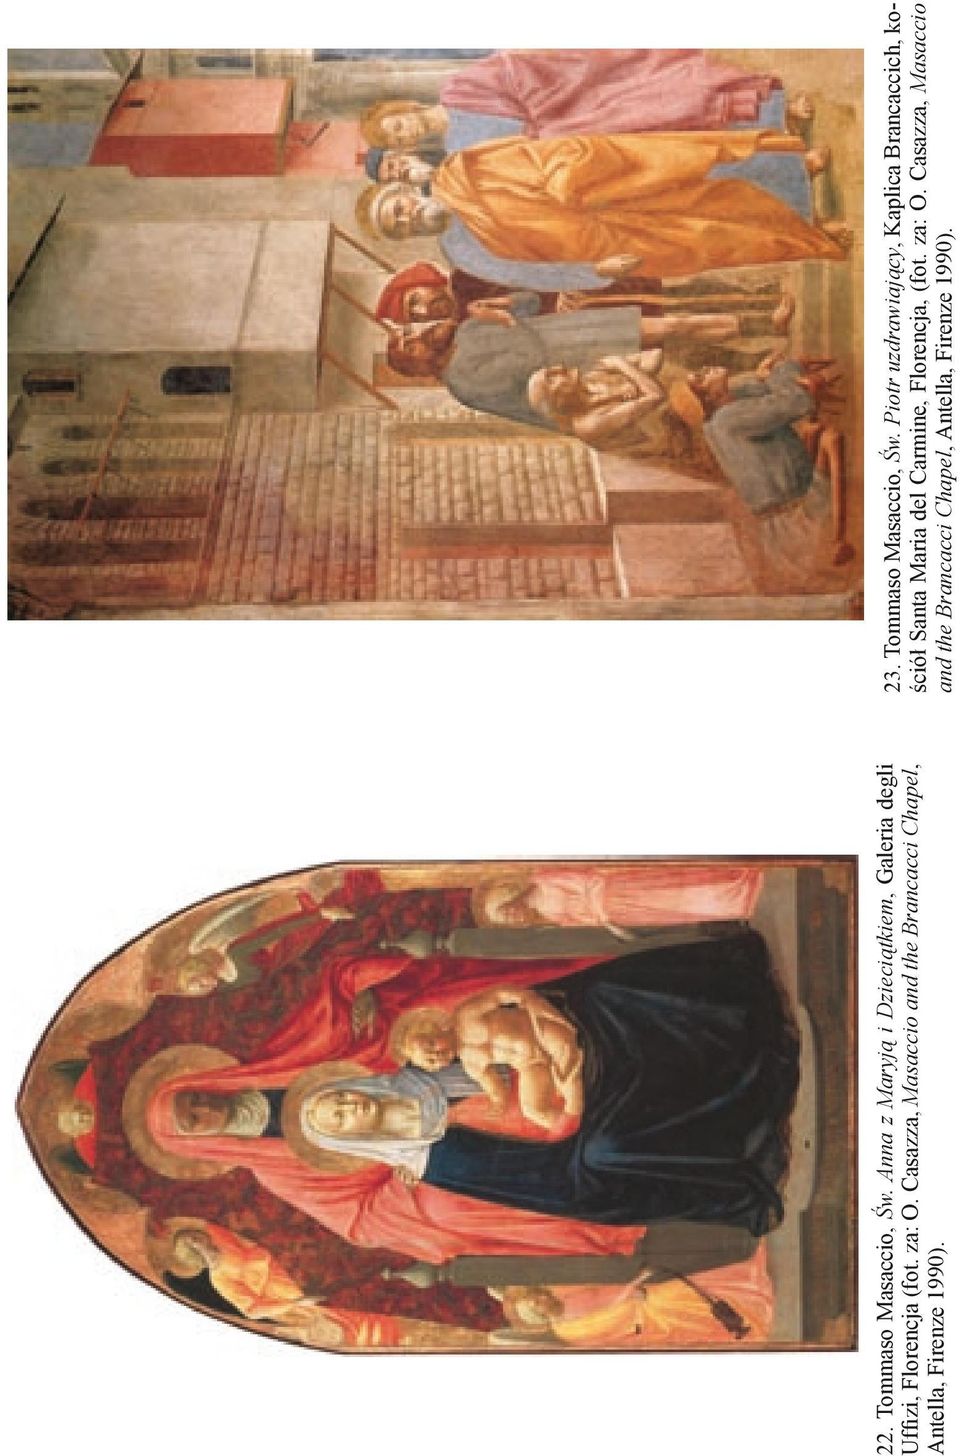 Casazza, Masaccio and the Brancacci Chapel, Antella, Firenze 1990). 23.